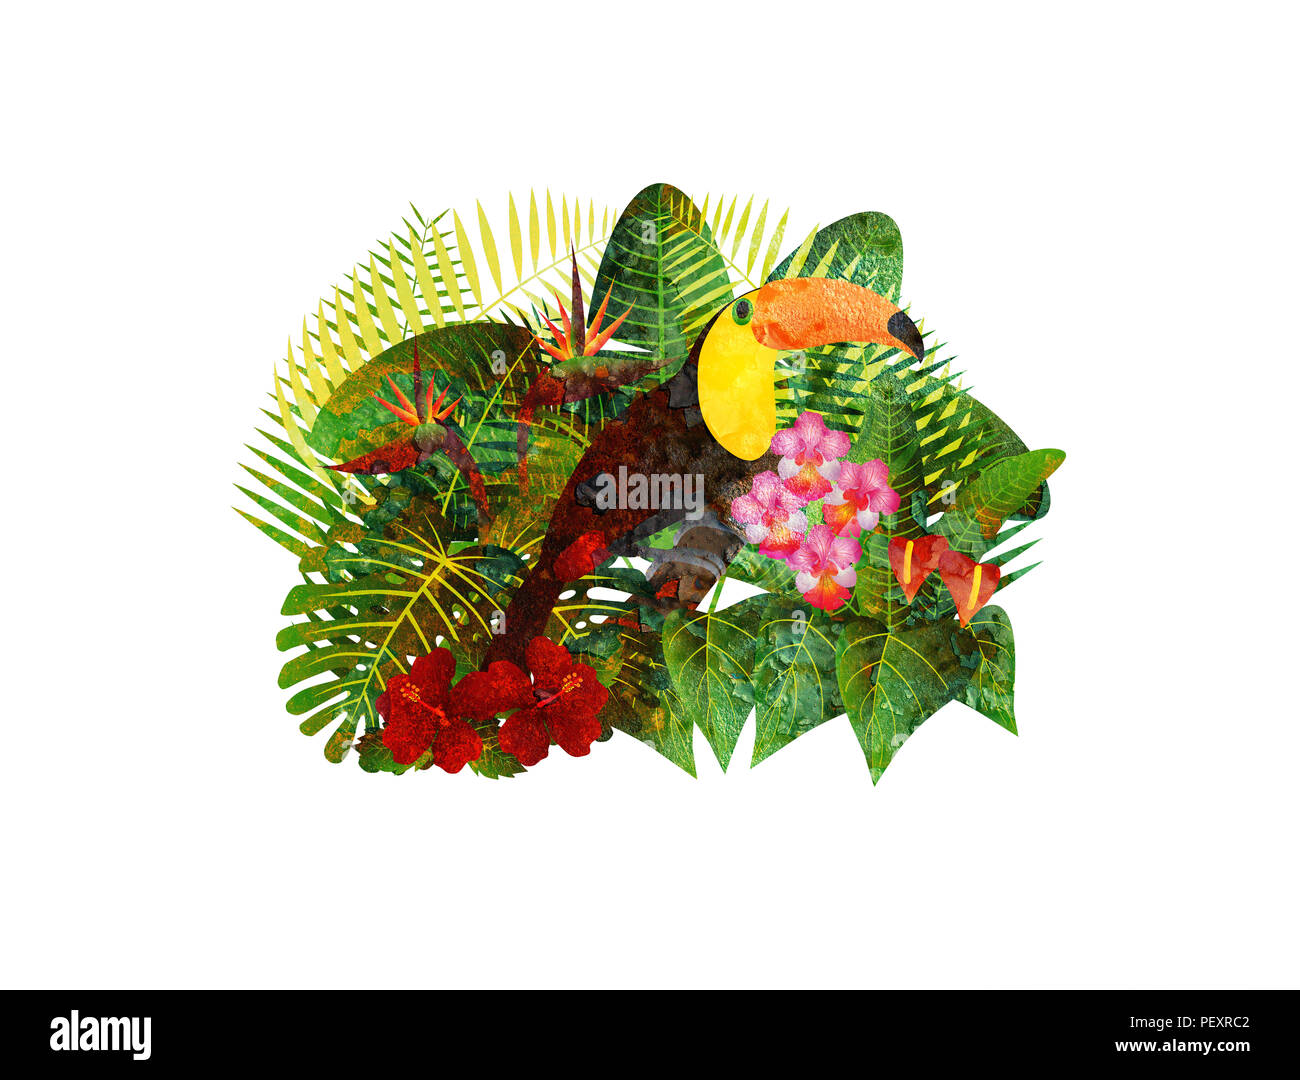 Tropischer Regenwald Dschungel Pflanzen mit Blättern, Blüten und Toucan Vogel Grunge Textur isoliert auf weißem Hintergrund Farbe Abbildung: Stockfoto